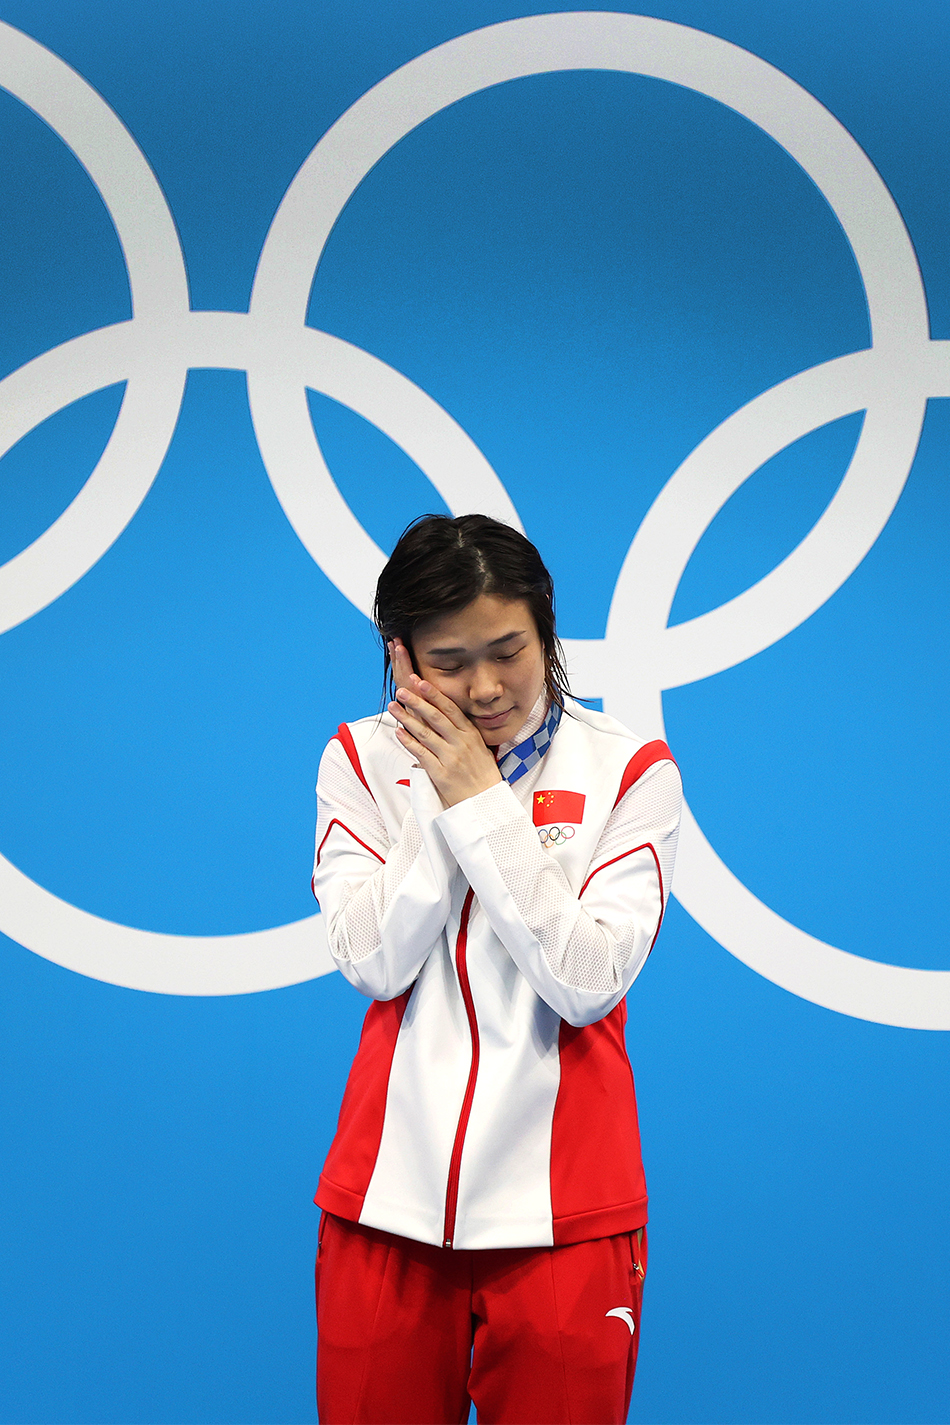 首金!中国摘亚运女子10米气手枪团体金牌 韩国第4_#中国速滑男队冲1500米金牌#_1500米速滑夺冠